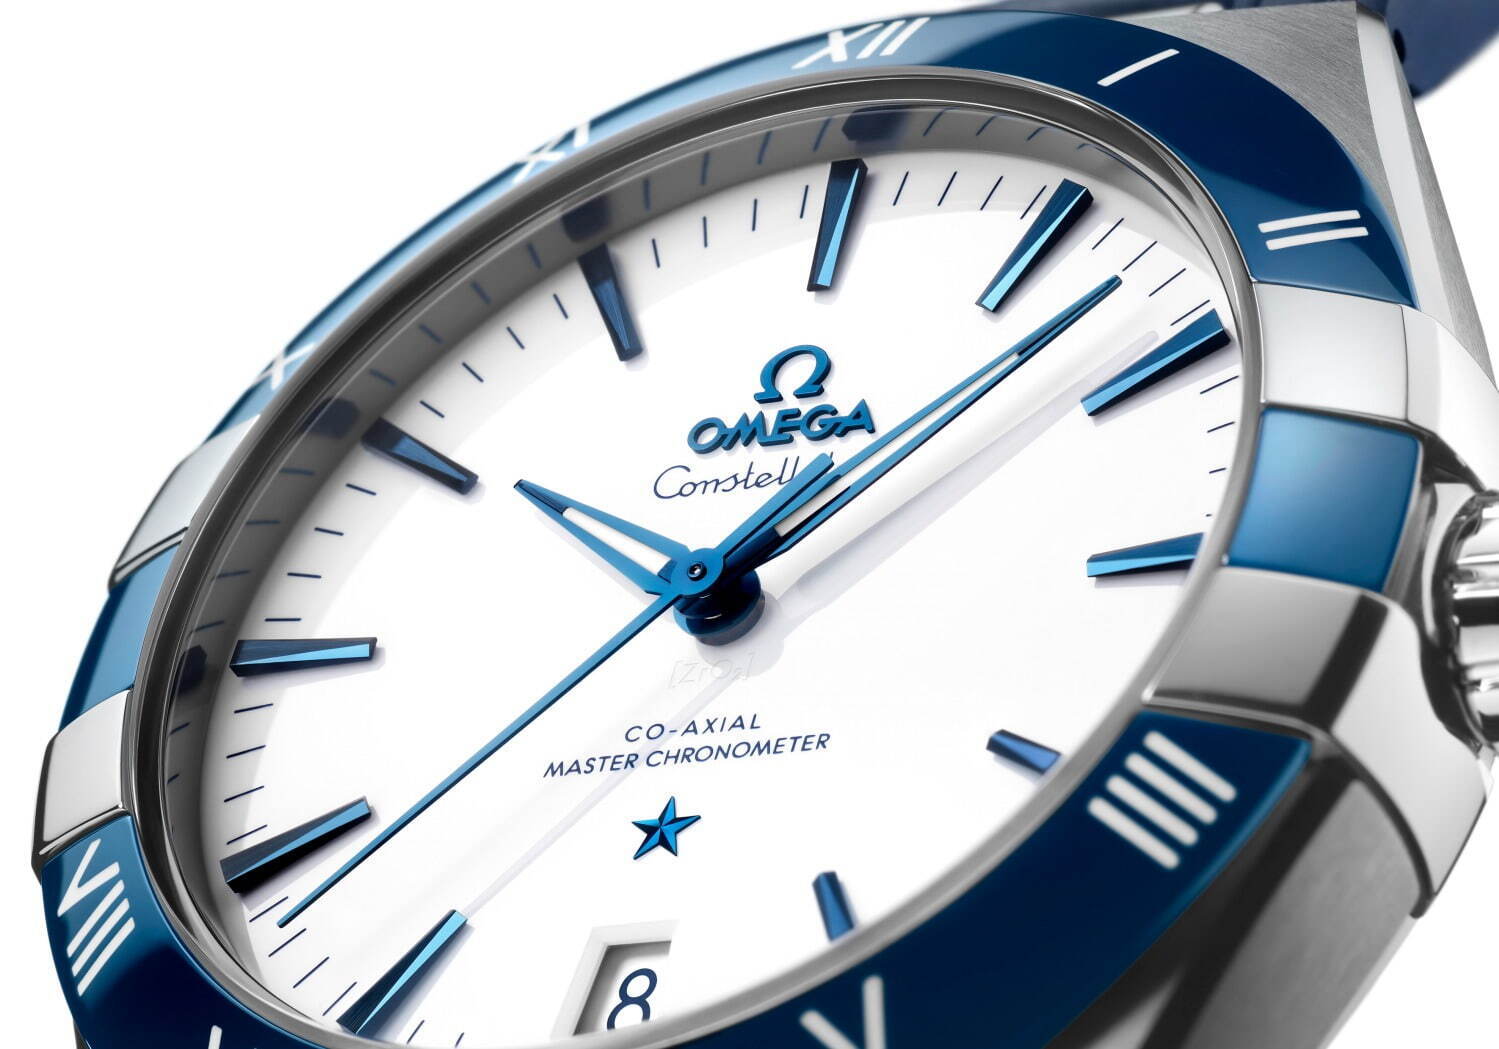 オメガの2022年新作メンズ腕時計、ブルー×ホワイトの新ダイアルを備え ...